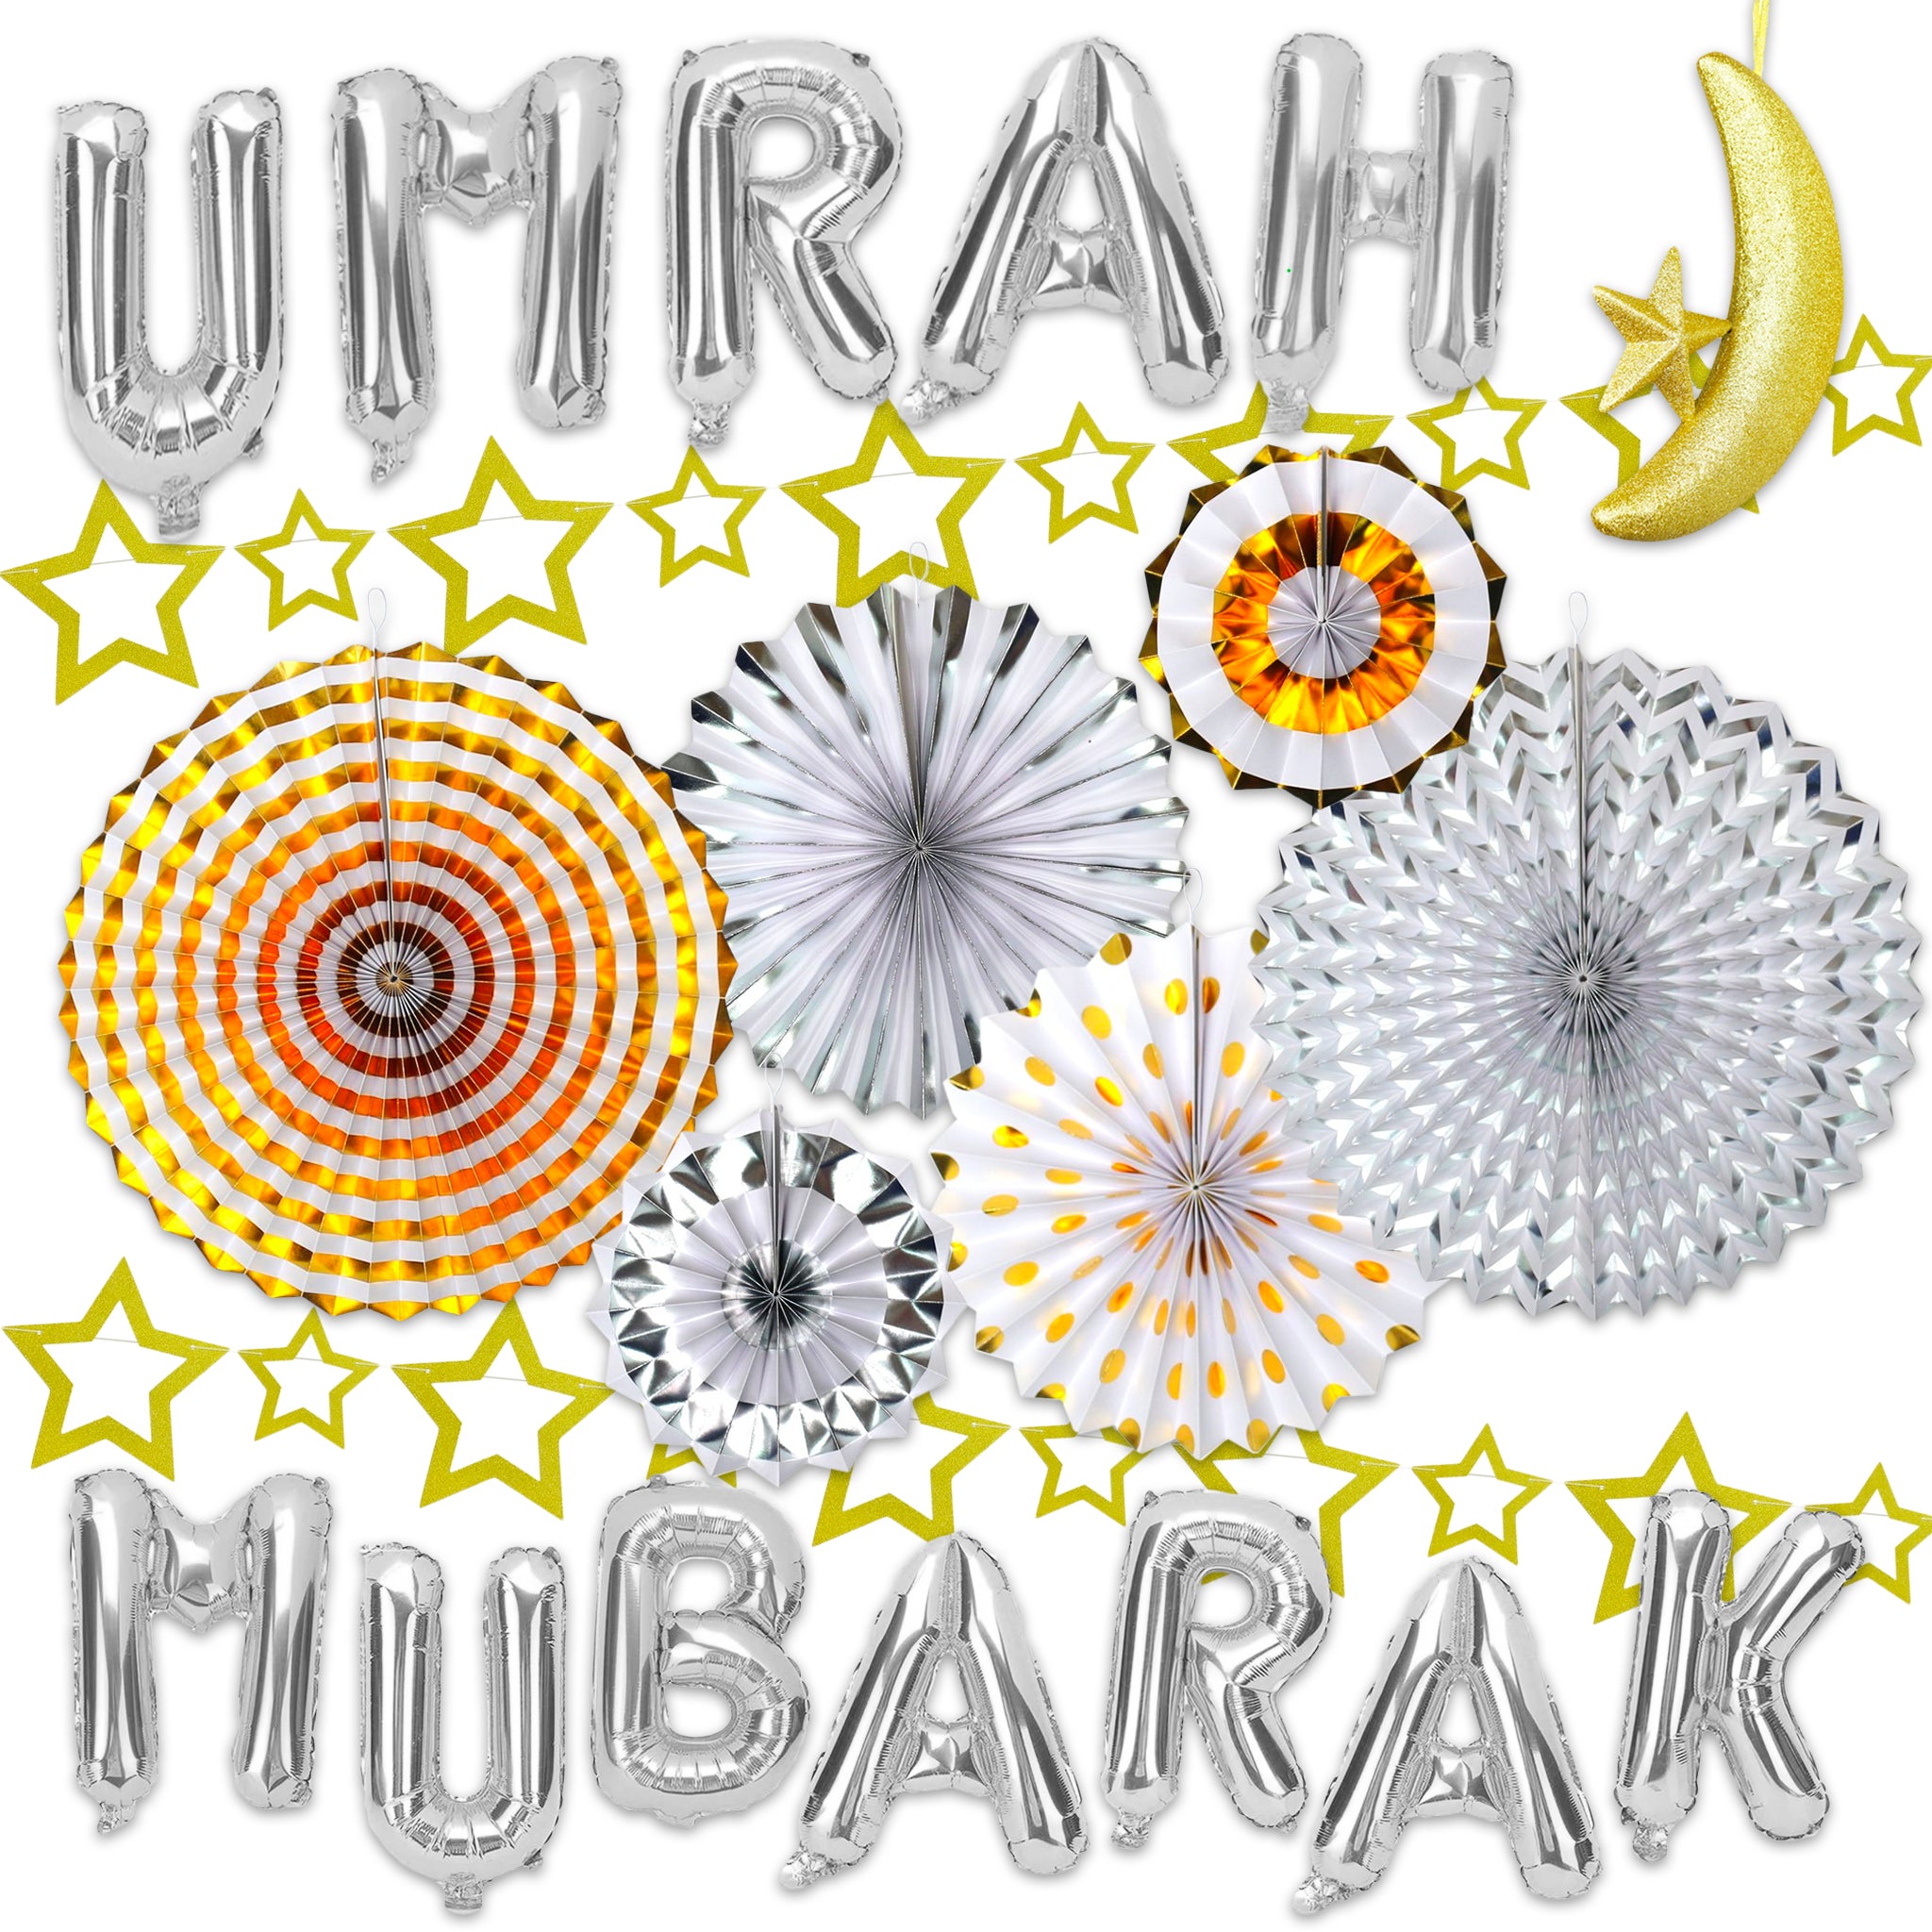 umrah decoration S.S  Iftar party, Eid decoration, Umrah mubarak